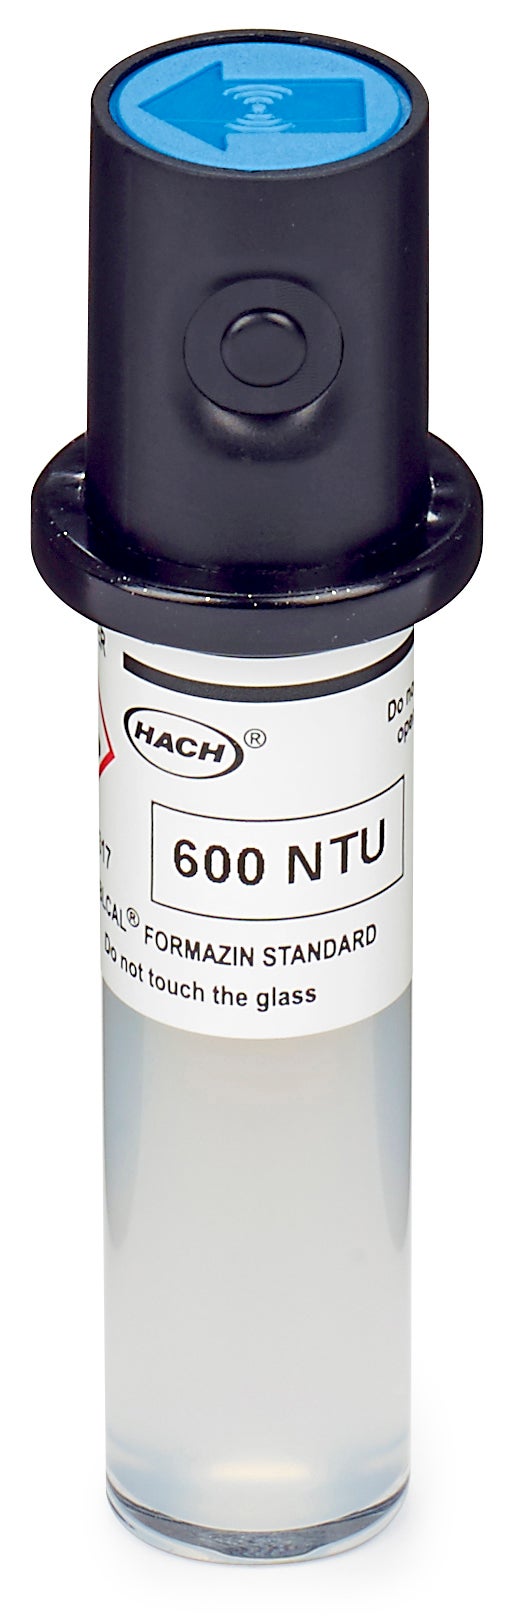 Флакон Stablcal за калибриране, 600 NTU, без RFID за лазерни турбидиметри TU5200, TU5300sc и TU5400sc